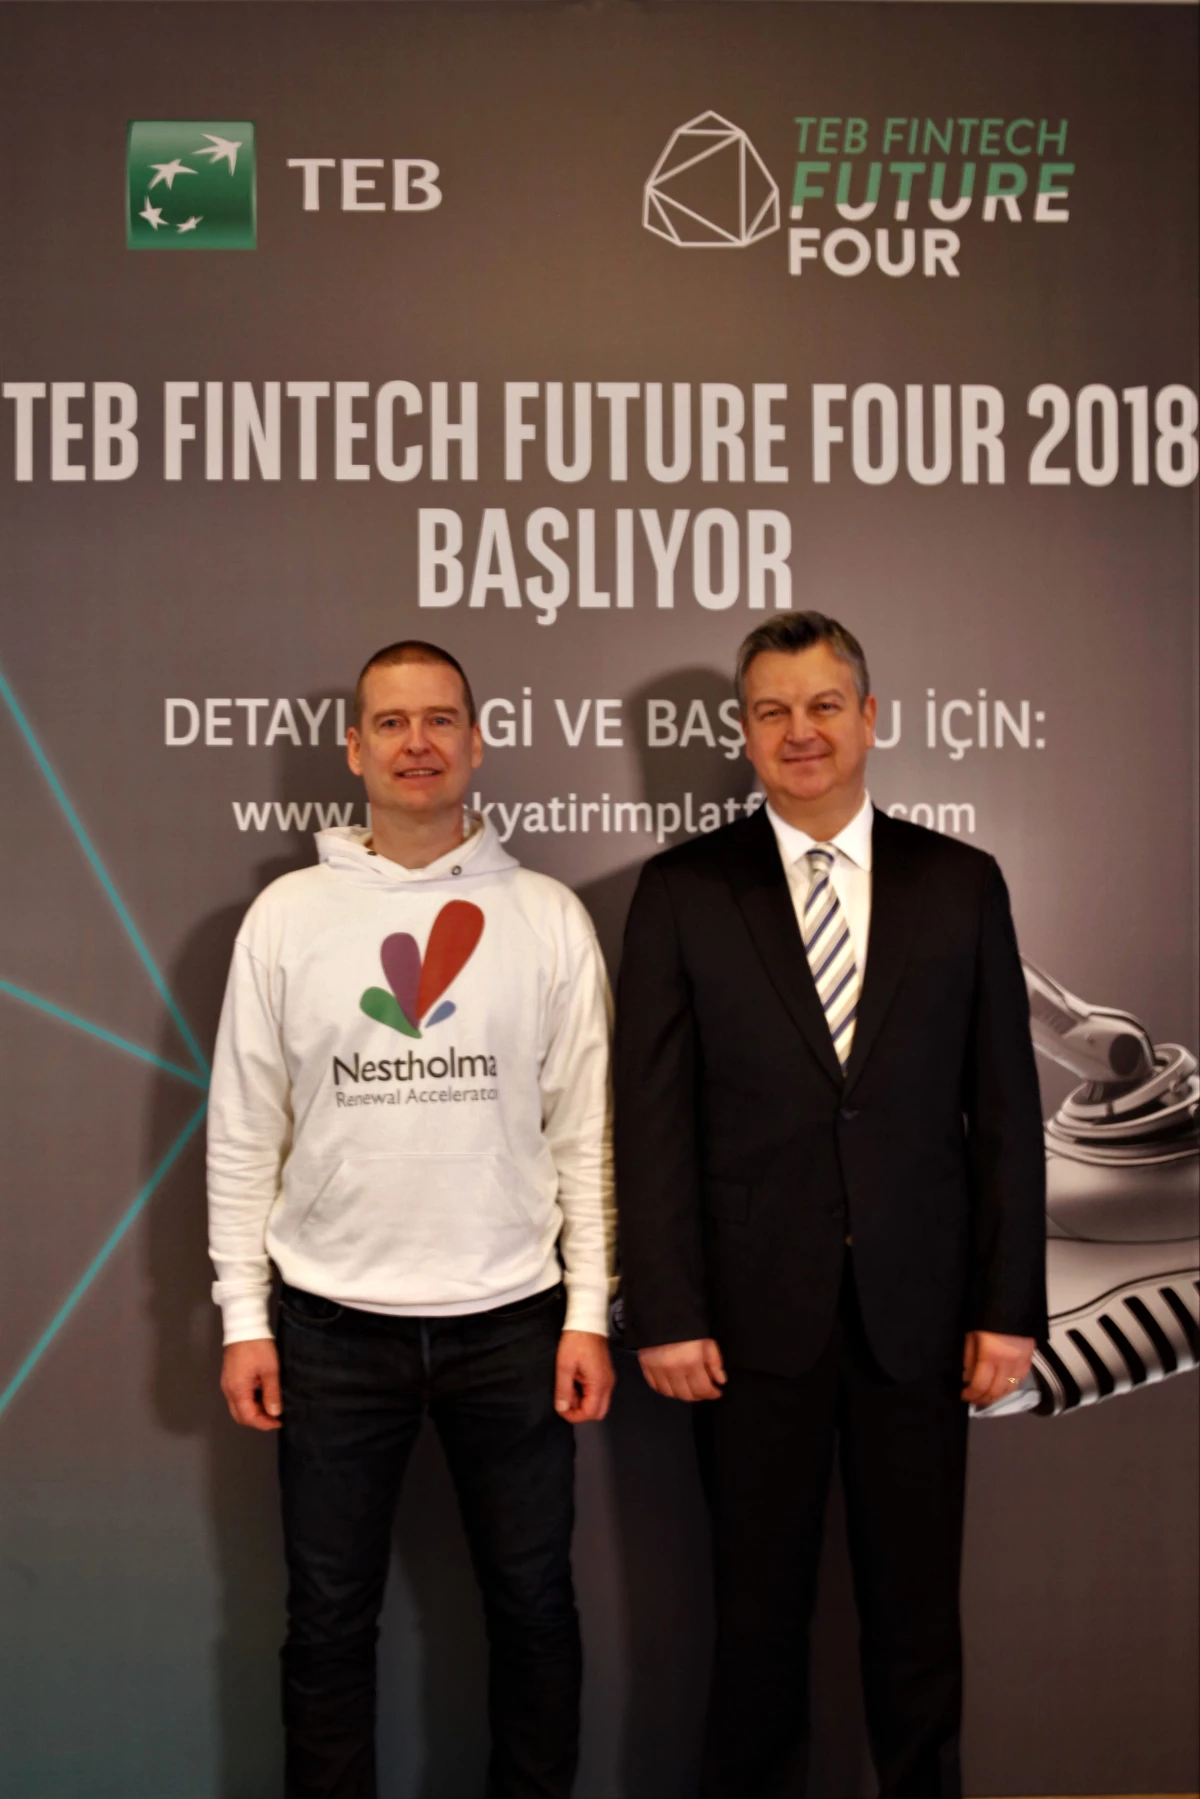 TEB, Fintech Future Four 2018 İle Yeni İş Ortağını Arıyor